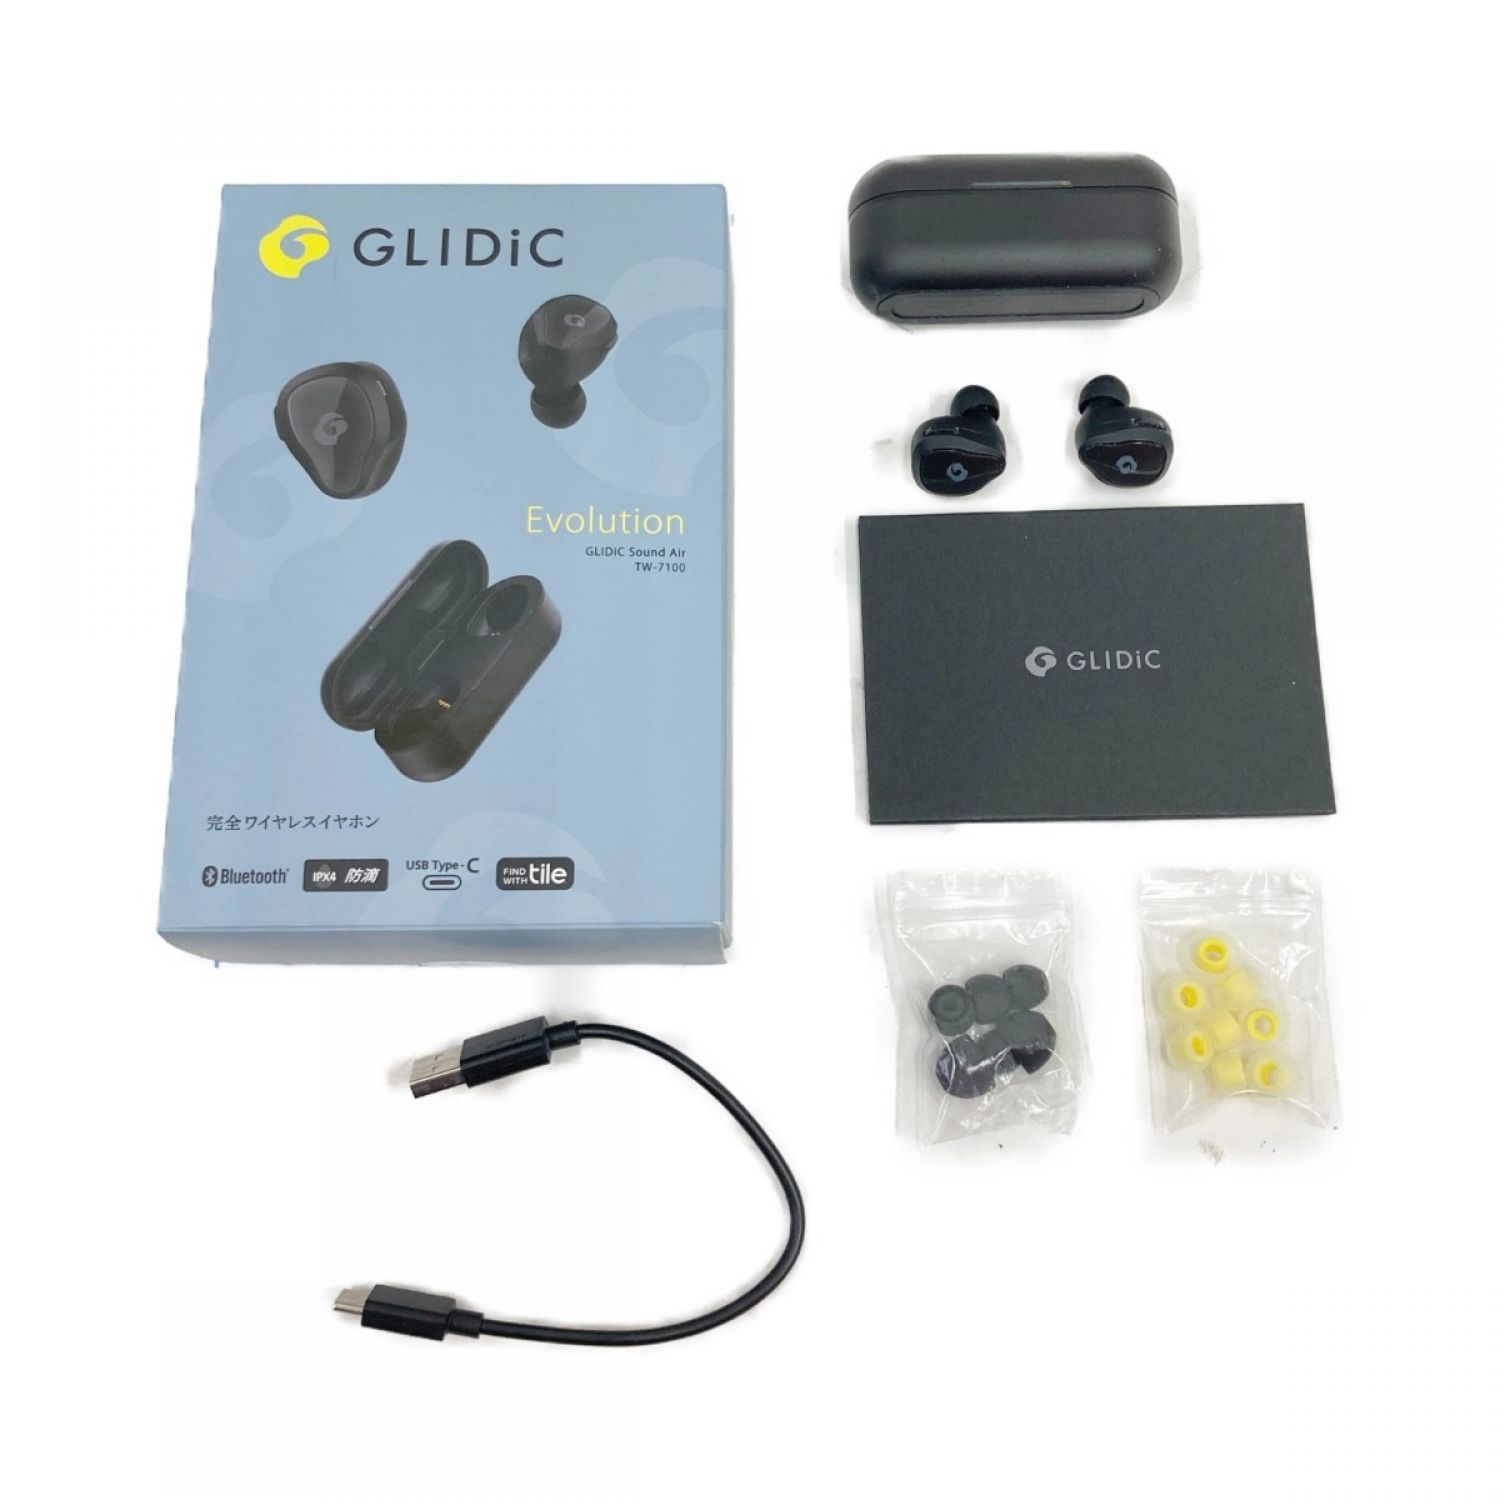 【新品】GLIDiC EVOLUTION TW-7100 ワイヤレスイヤホン